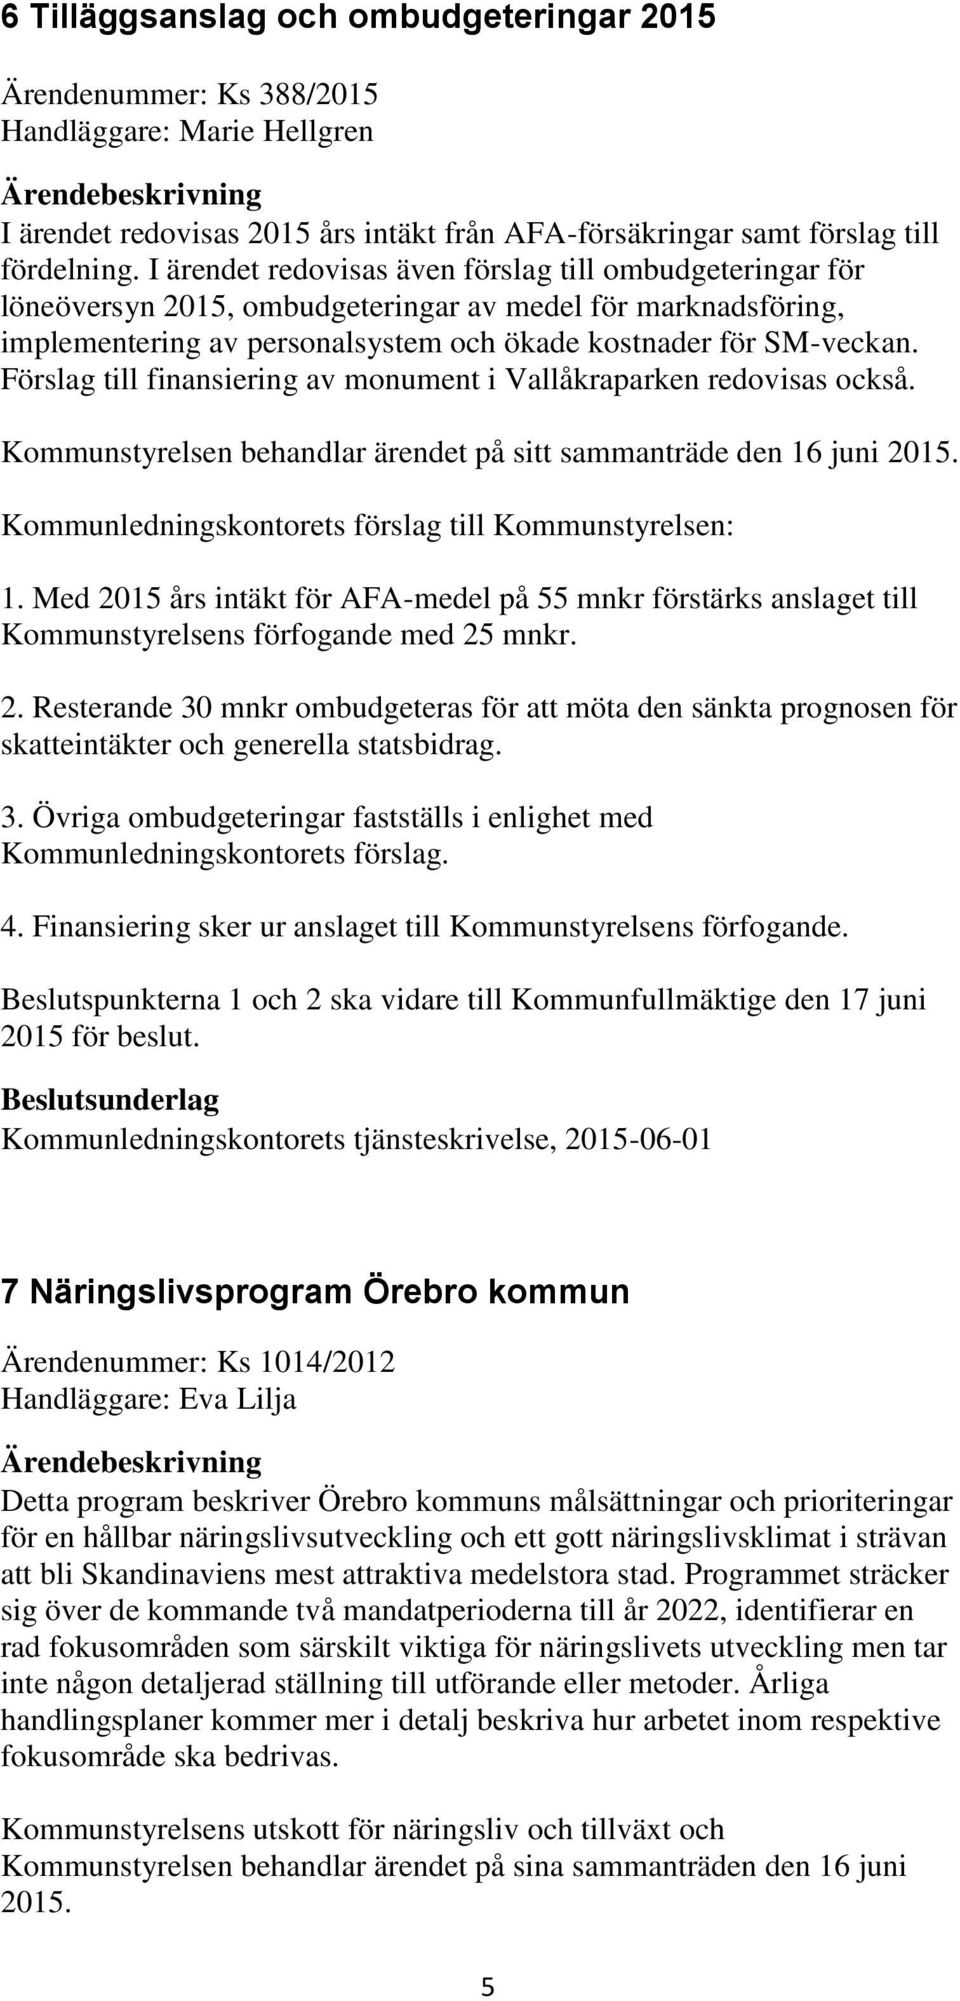 Förslag till finansiering av monument i Vallåkraparken redovisas också. Kommunstyrelsen behandlar ärendet på sitt sammanträde den 16 juni 2015. Kommunledningskontorets förslag till Kommunstyrelsen: 1.